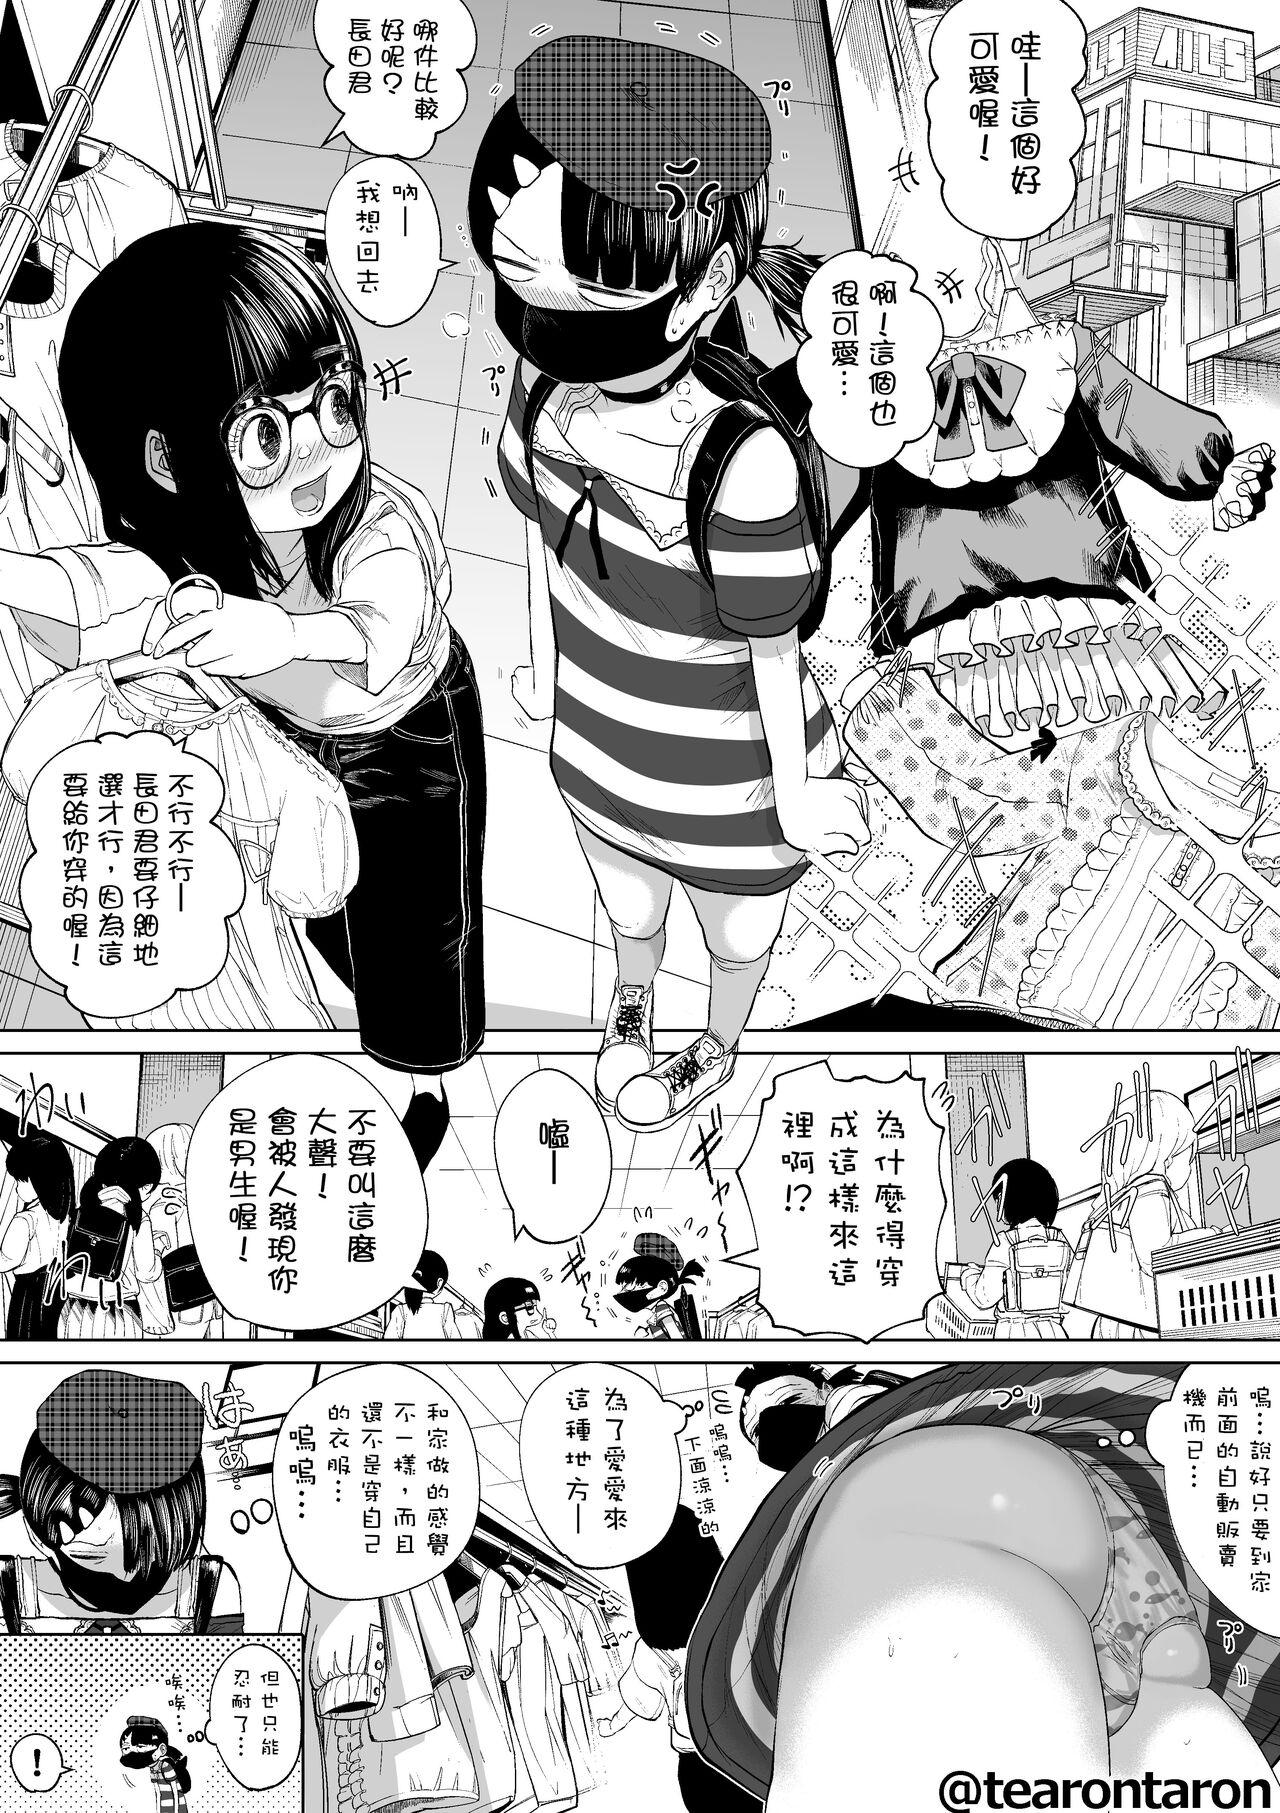 Boys Gakkou de Ichiban Jimi na Futari ga Tsukiatte kara no Hanashi 5 - Original Bribe - Page 3